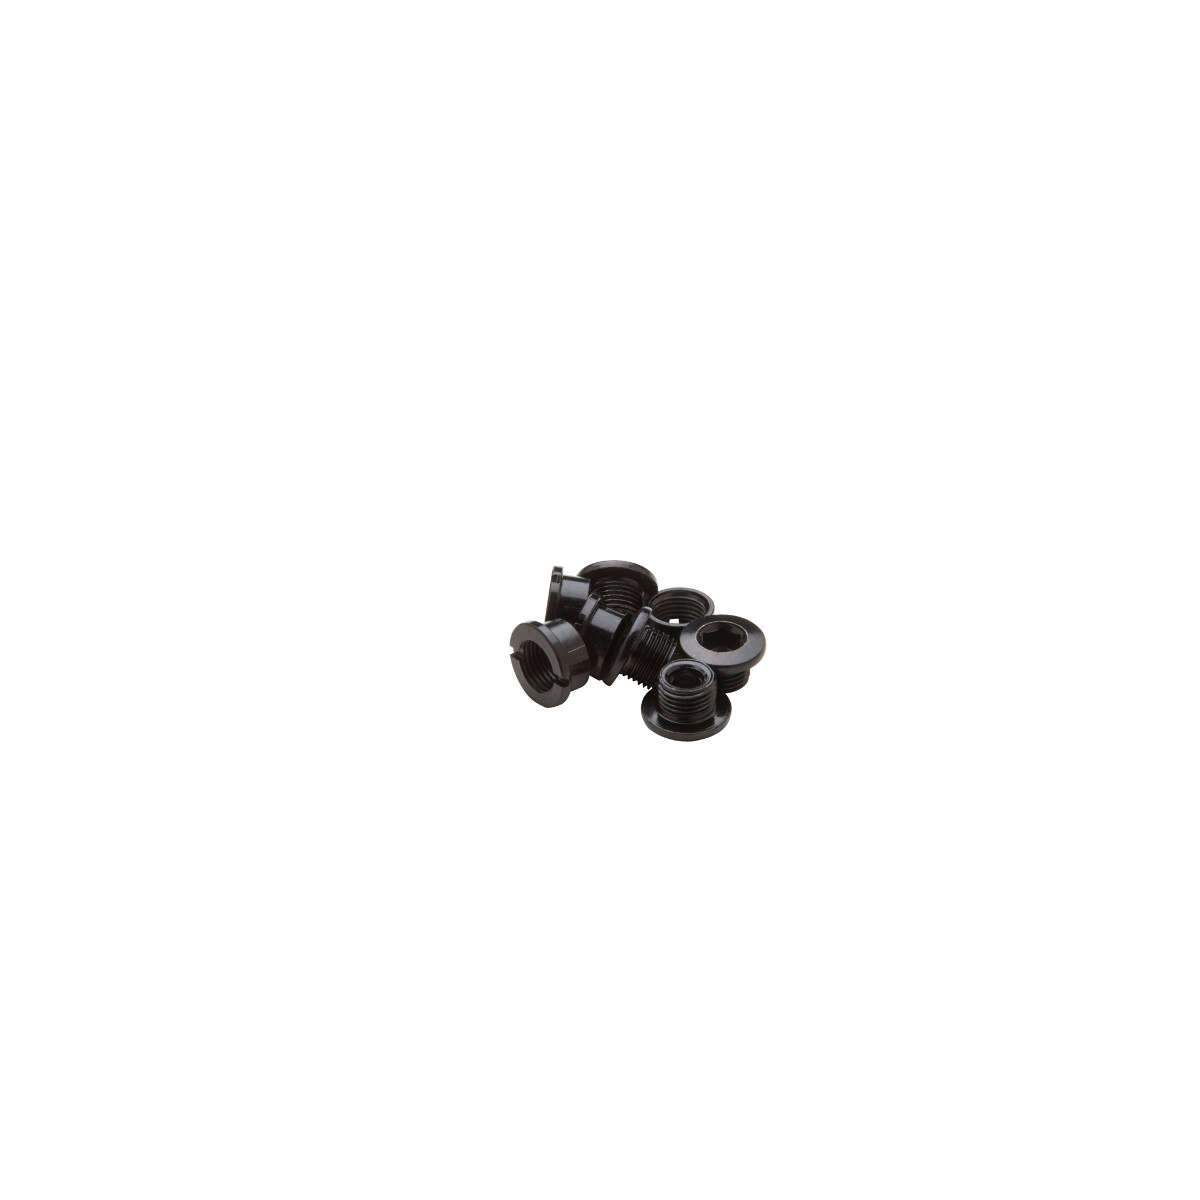 Race Face Kit Viti Corona  Black, Steel, M8 x 5 mm Screws/ M8 x 4 mm Nuts, 4 pcs each